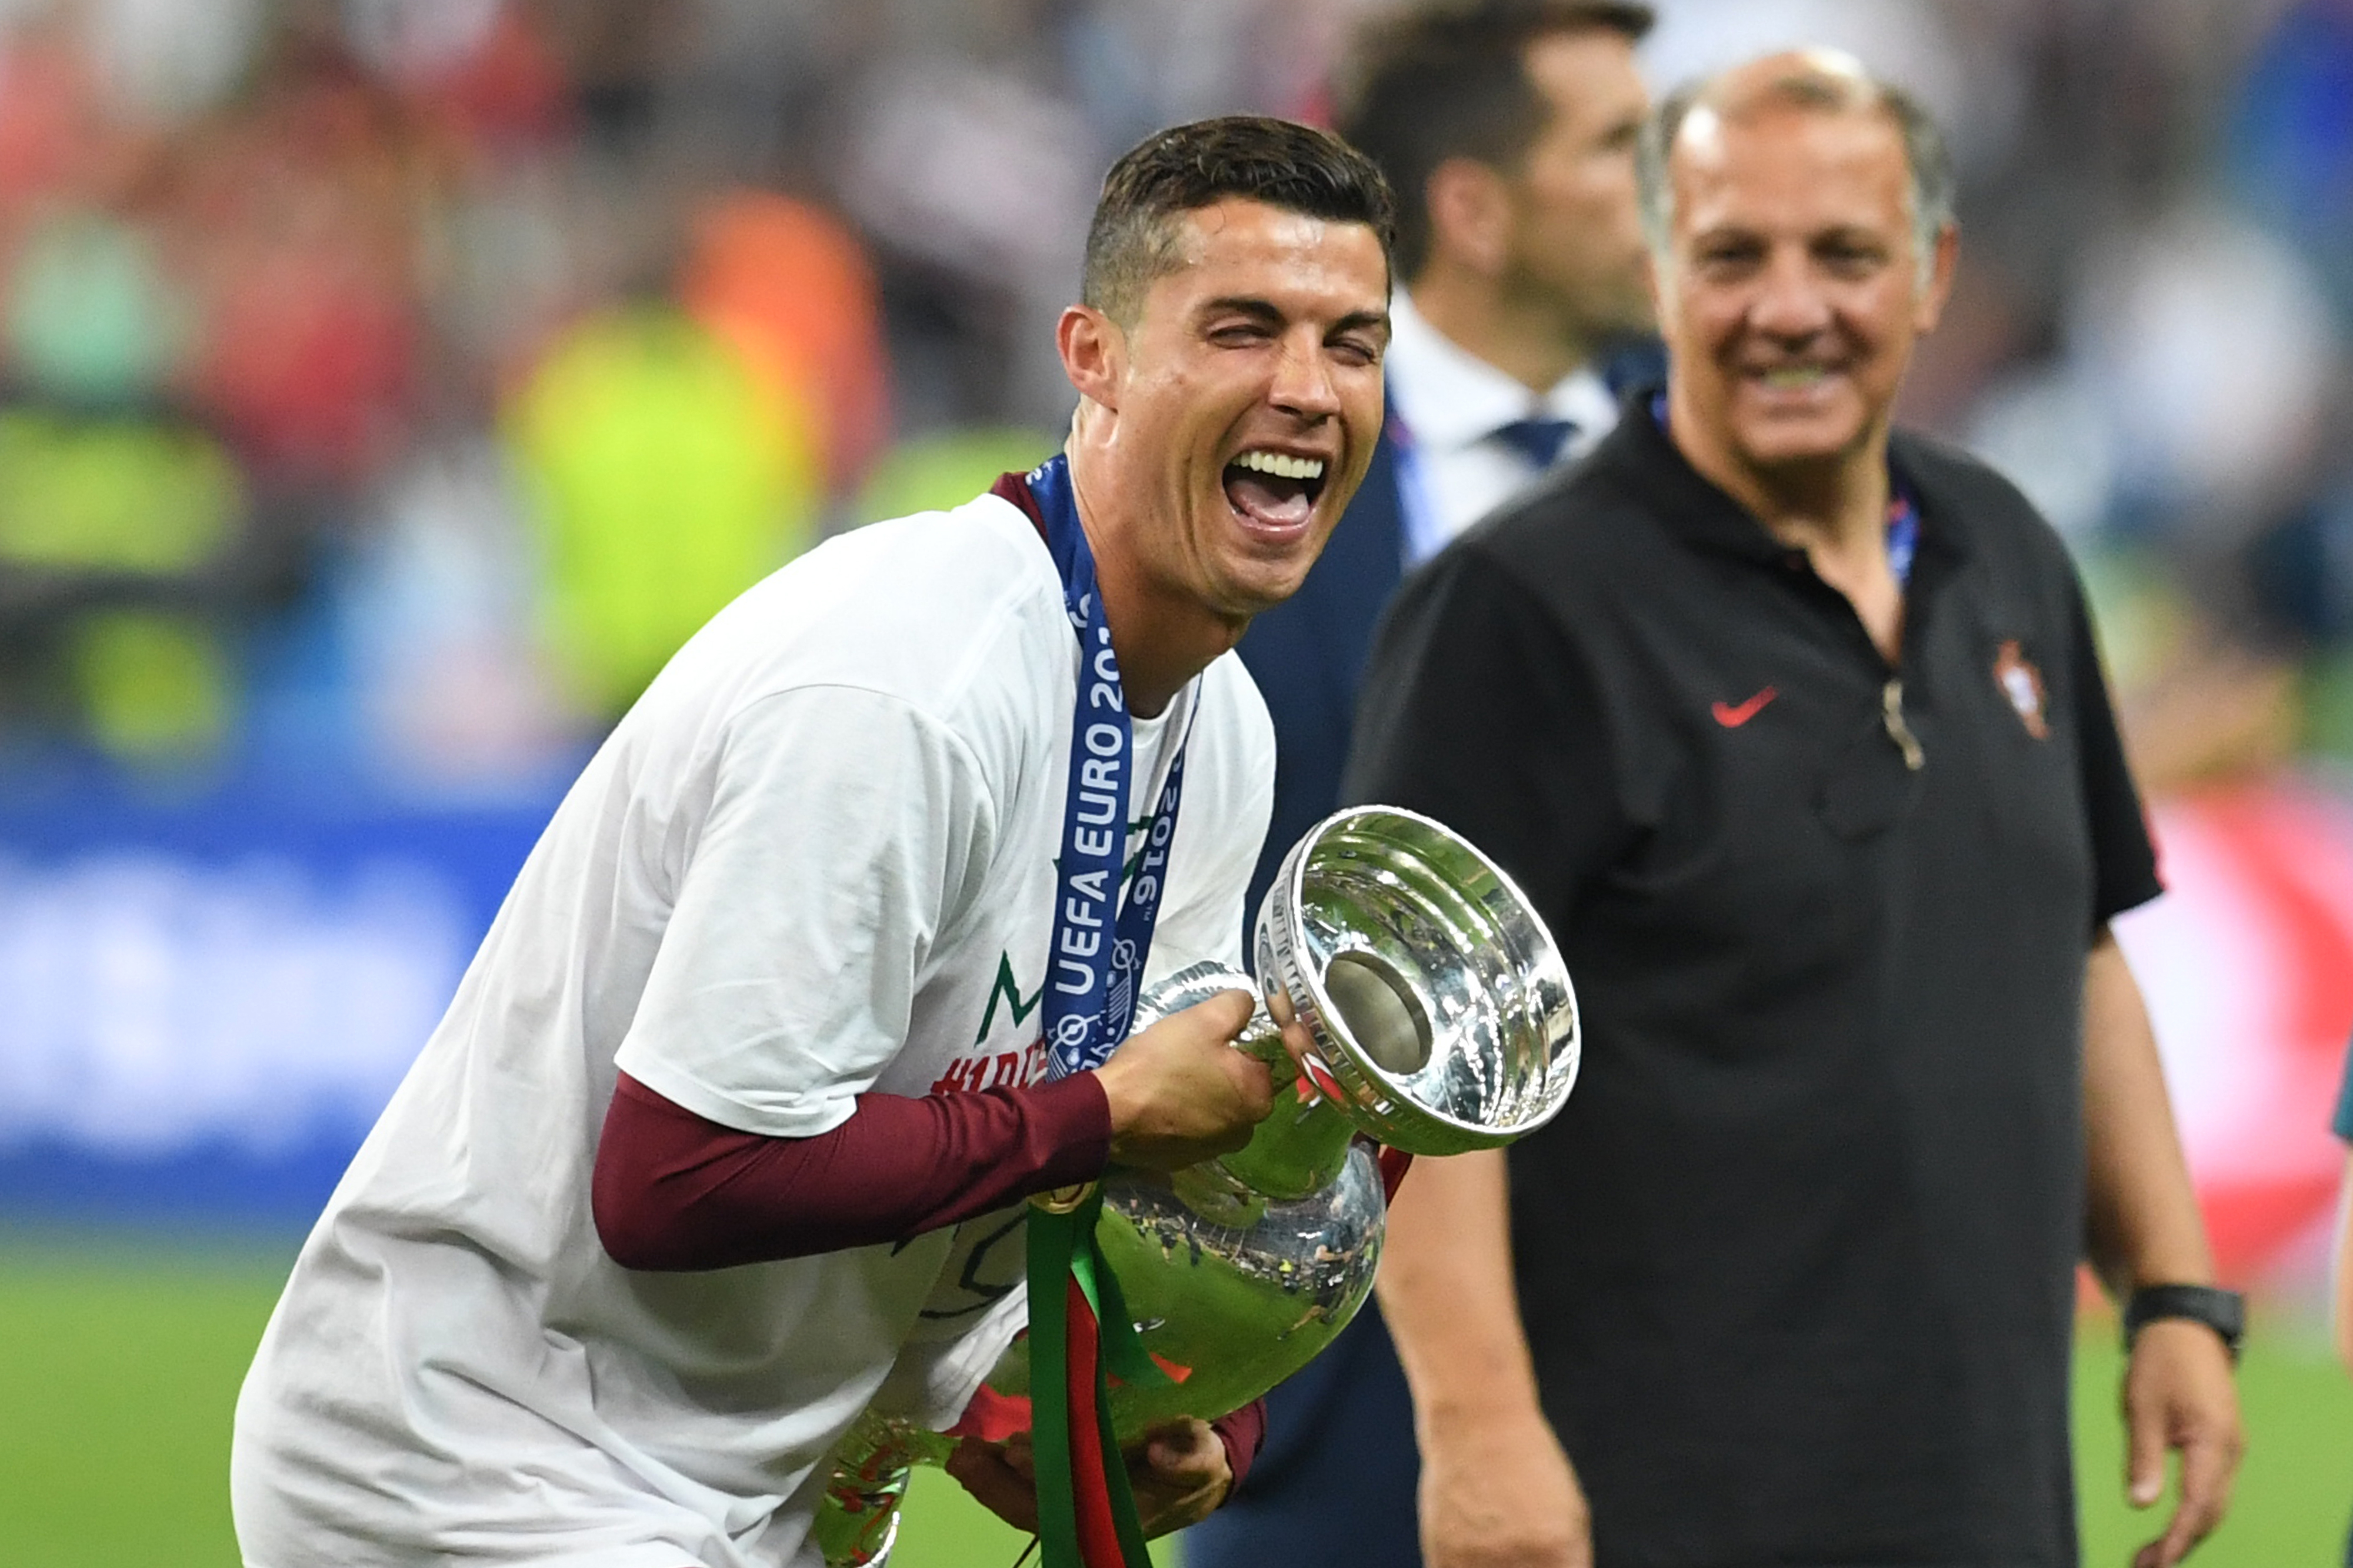 Cristiano Ronaldo bate mais um recorde neste Euro2016 - Euro - SAPO Desporto